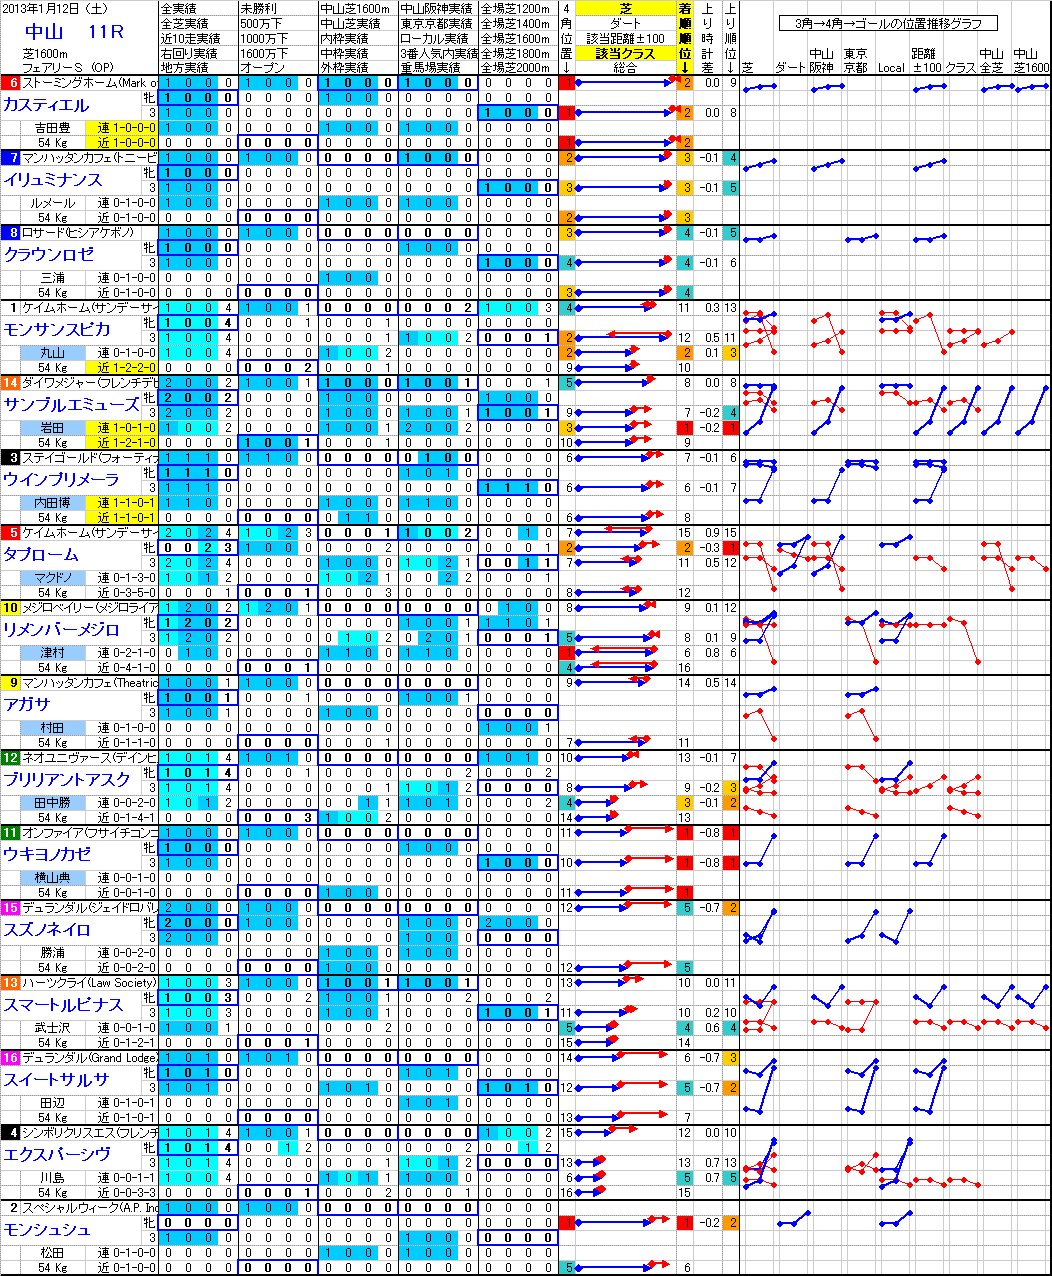 中山 2013年1月12日 （土） ： 11R － 分析データ